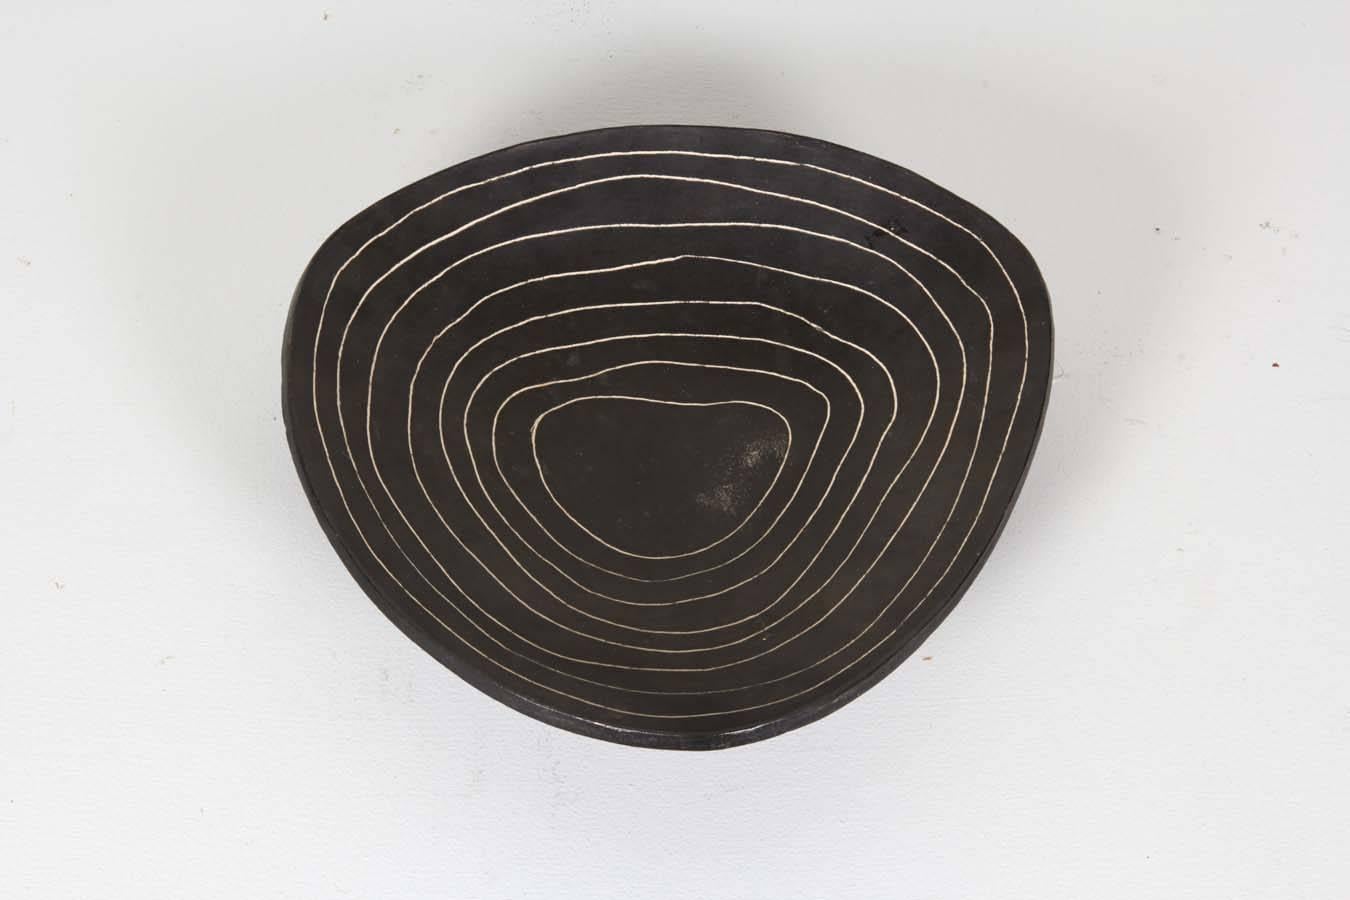 Marianne Vissiere, 2015.
Ceramic bowl black glaze, white etched irregular lines.
Signed.